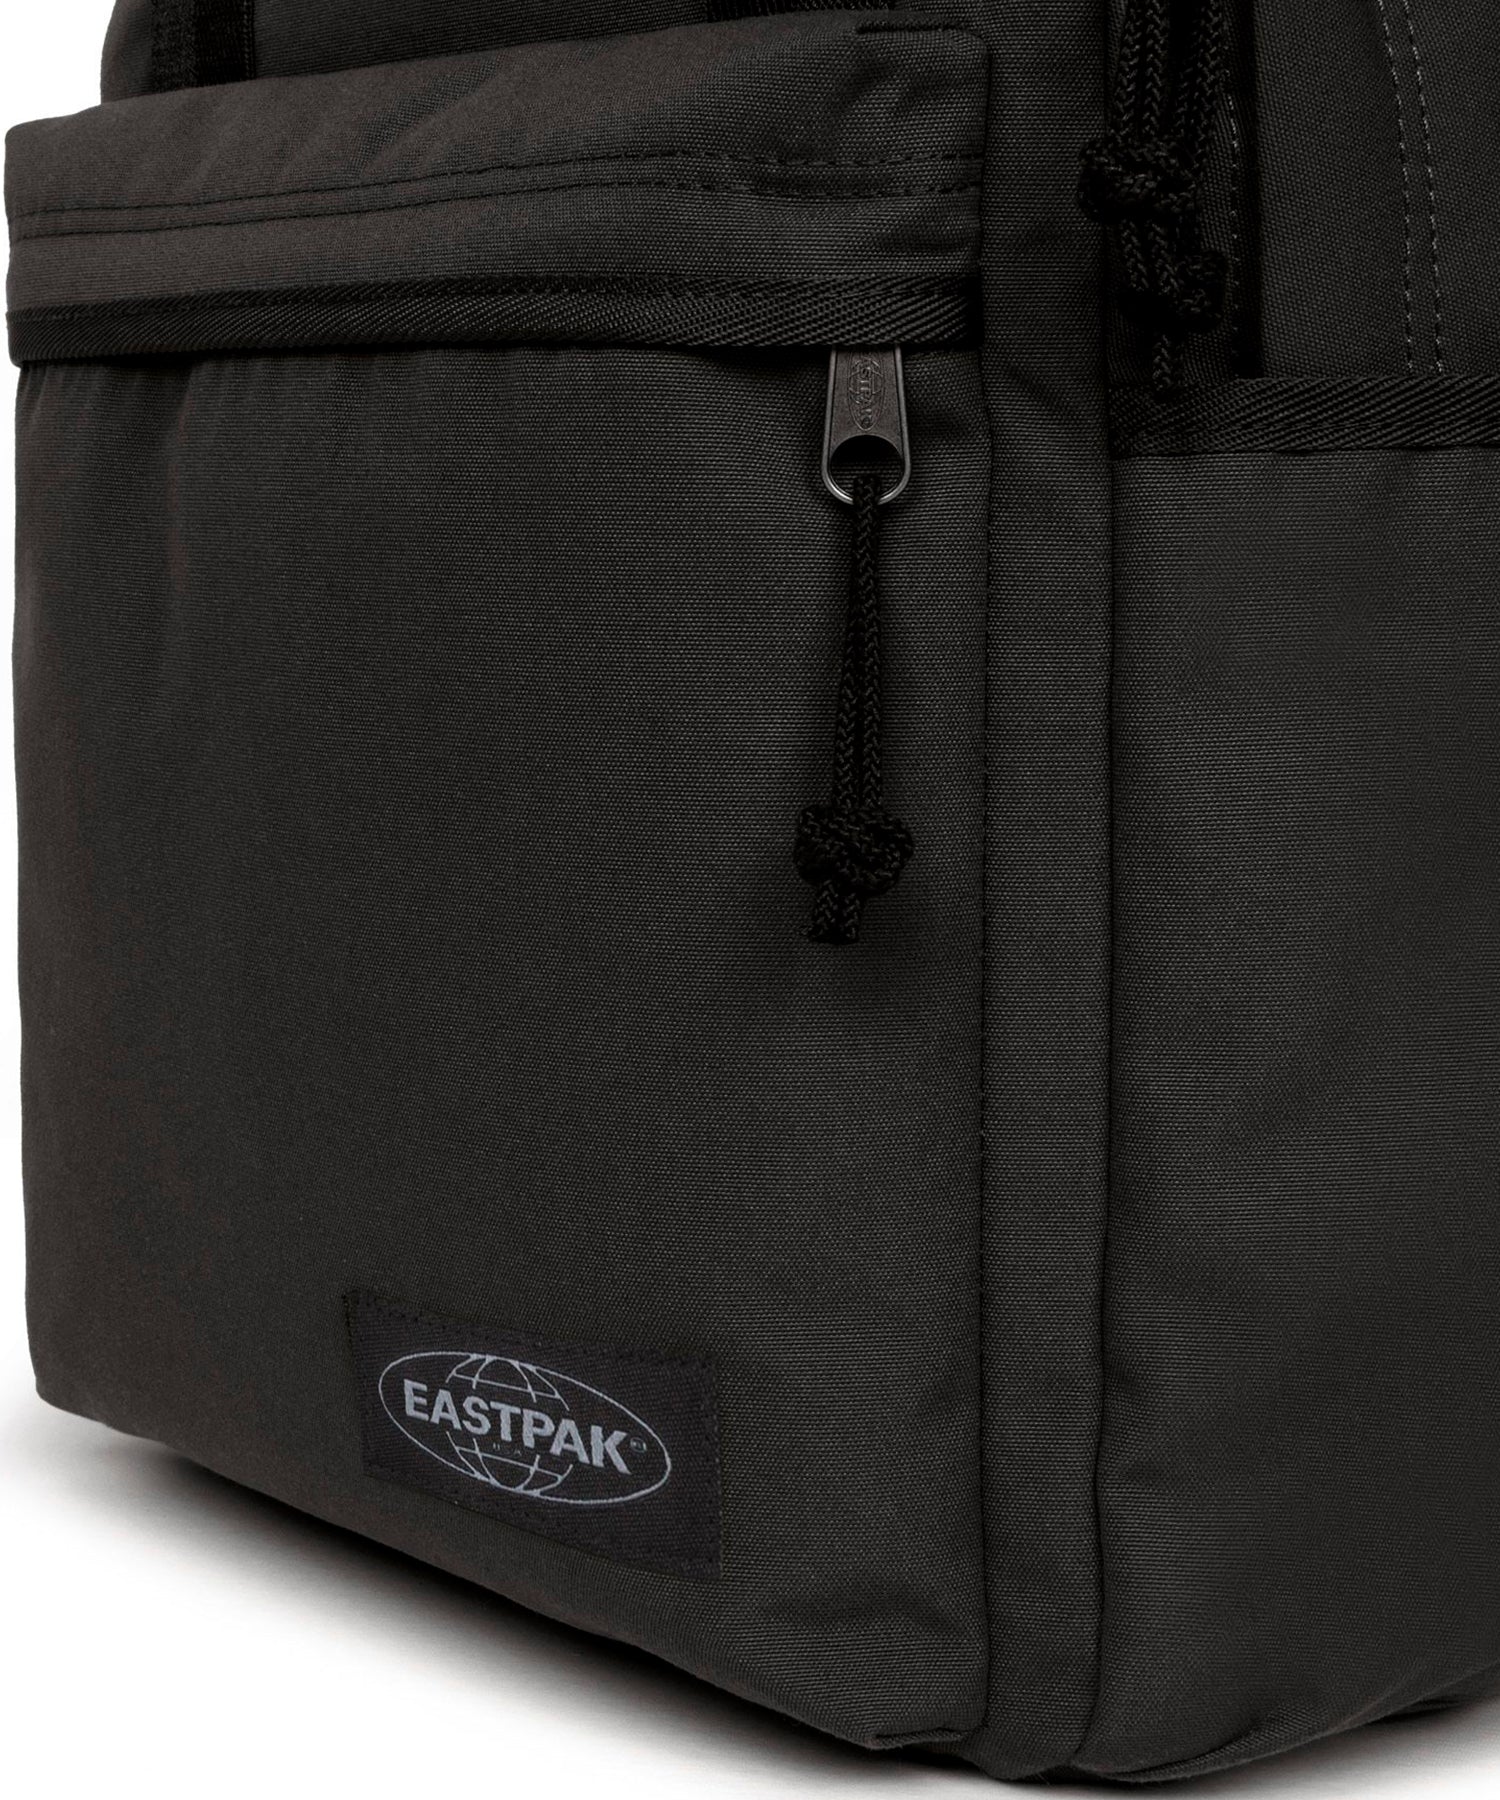 eastpak-mochila-optown-black-nuevo-diseño-compacta-color-negro-sirve-como-bolso-de-mano-y-mochila